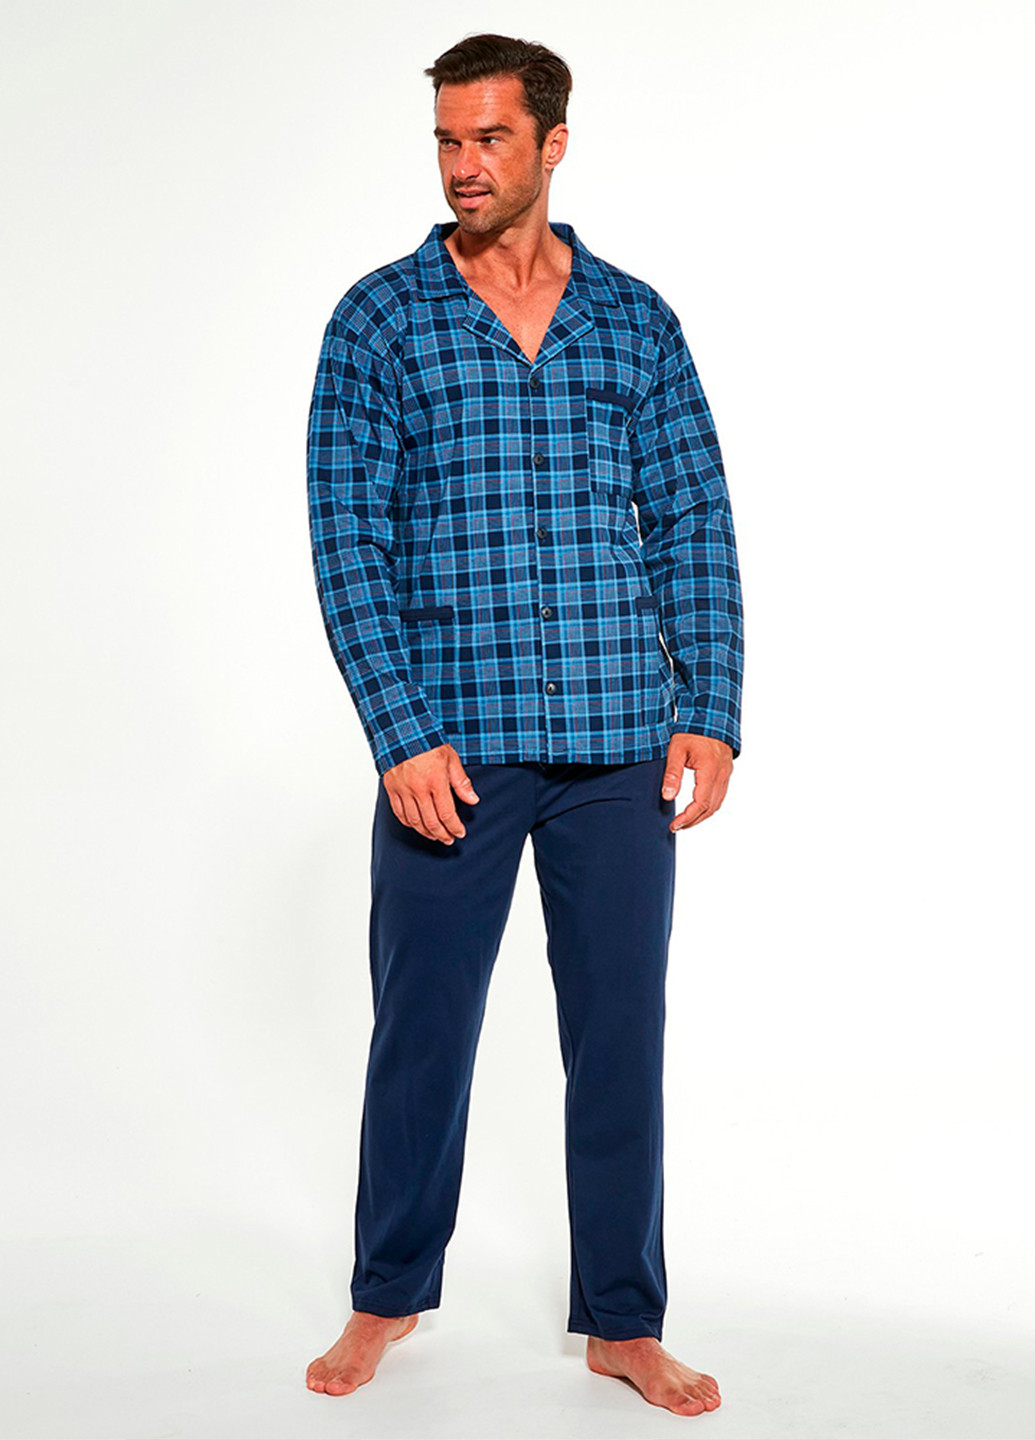 Піжама (сорочка, штани) Cornette рубашка + брюки клітинка синя домашня бавовна